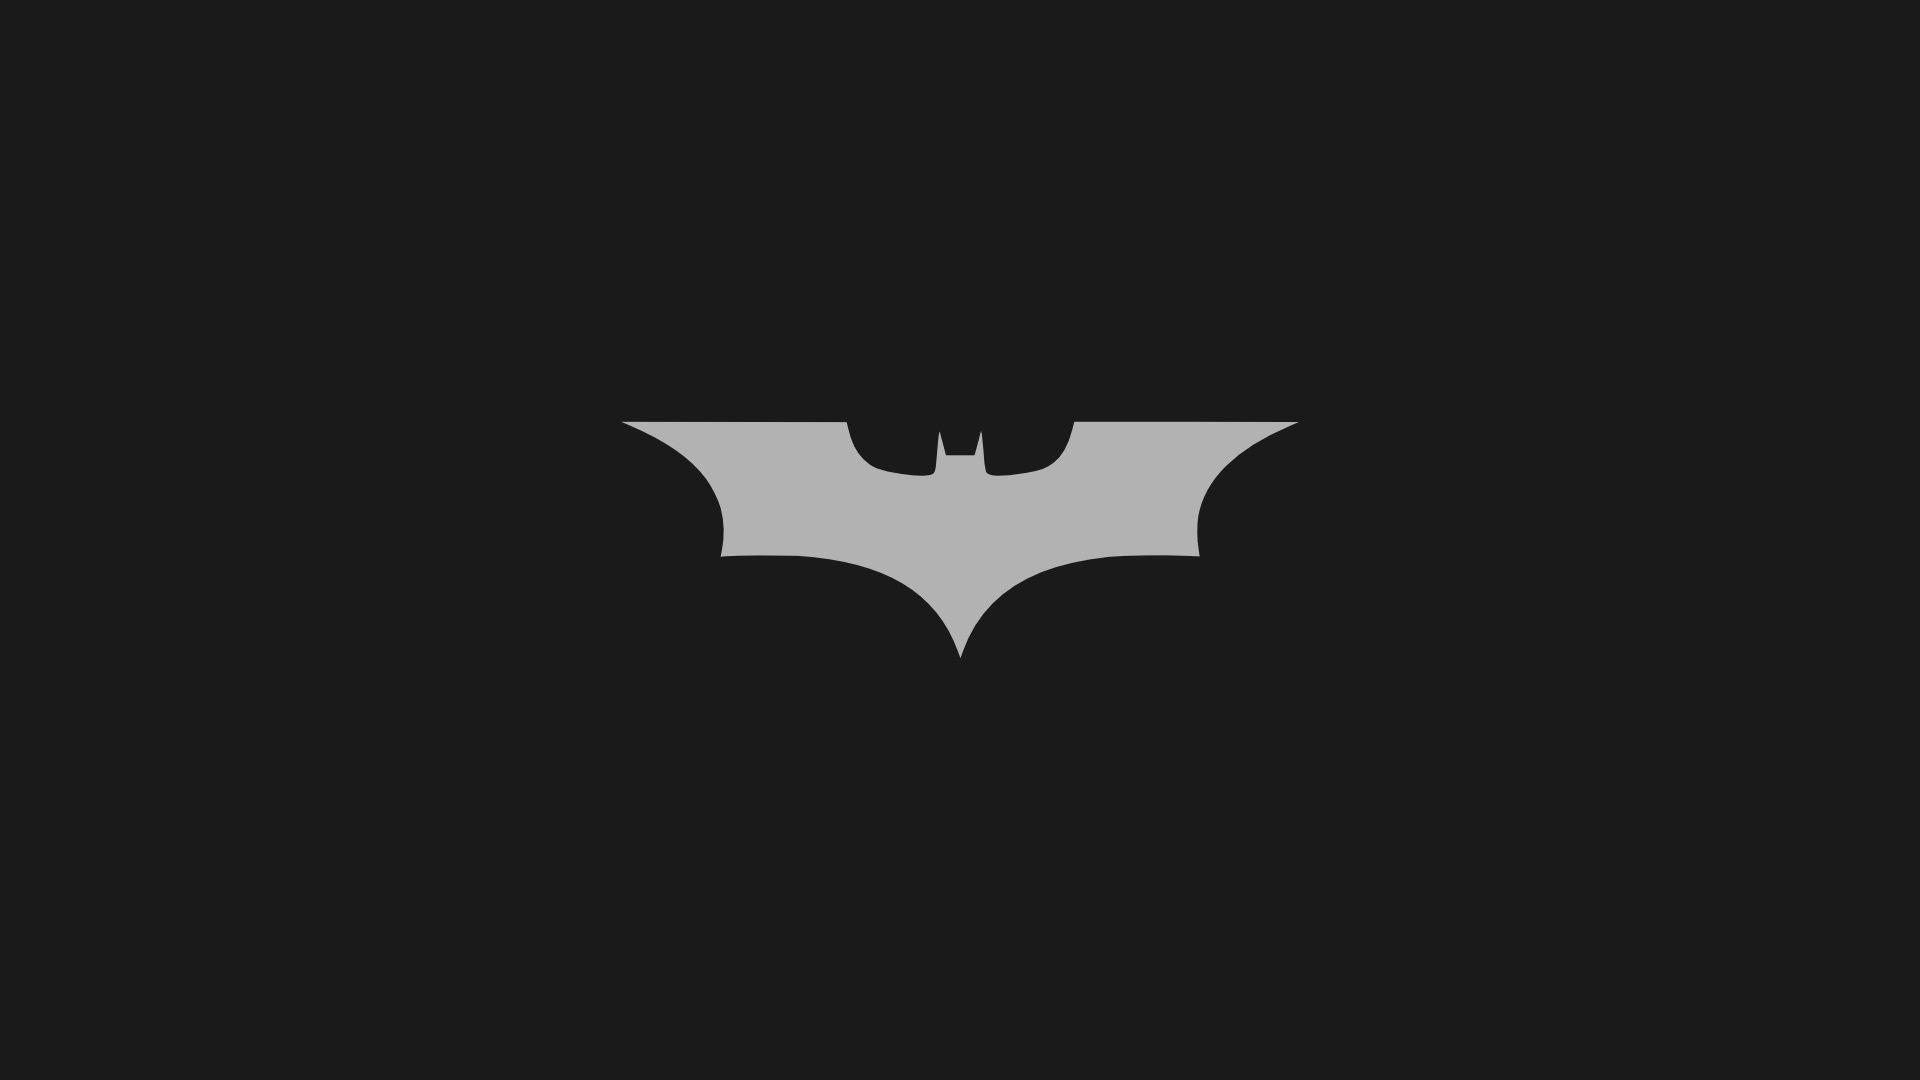 Minimalistic Batman Logo desktop PC and Mac wallpaper